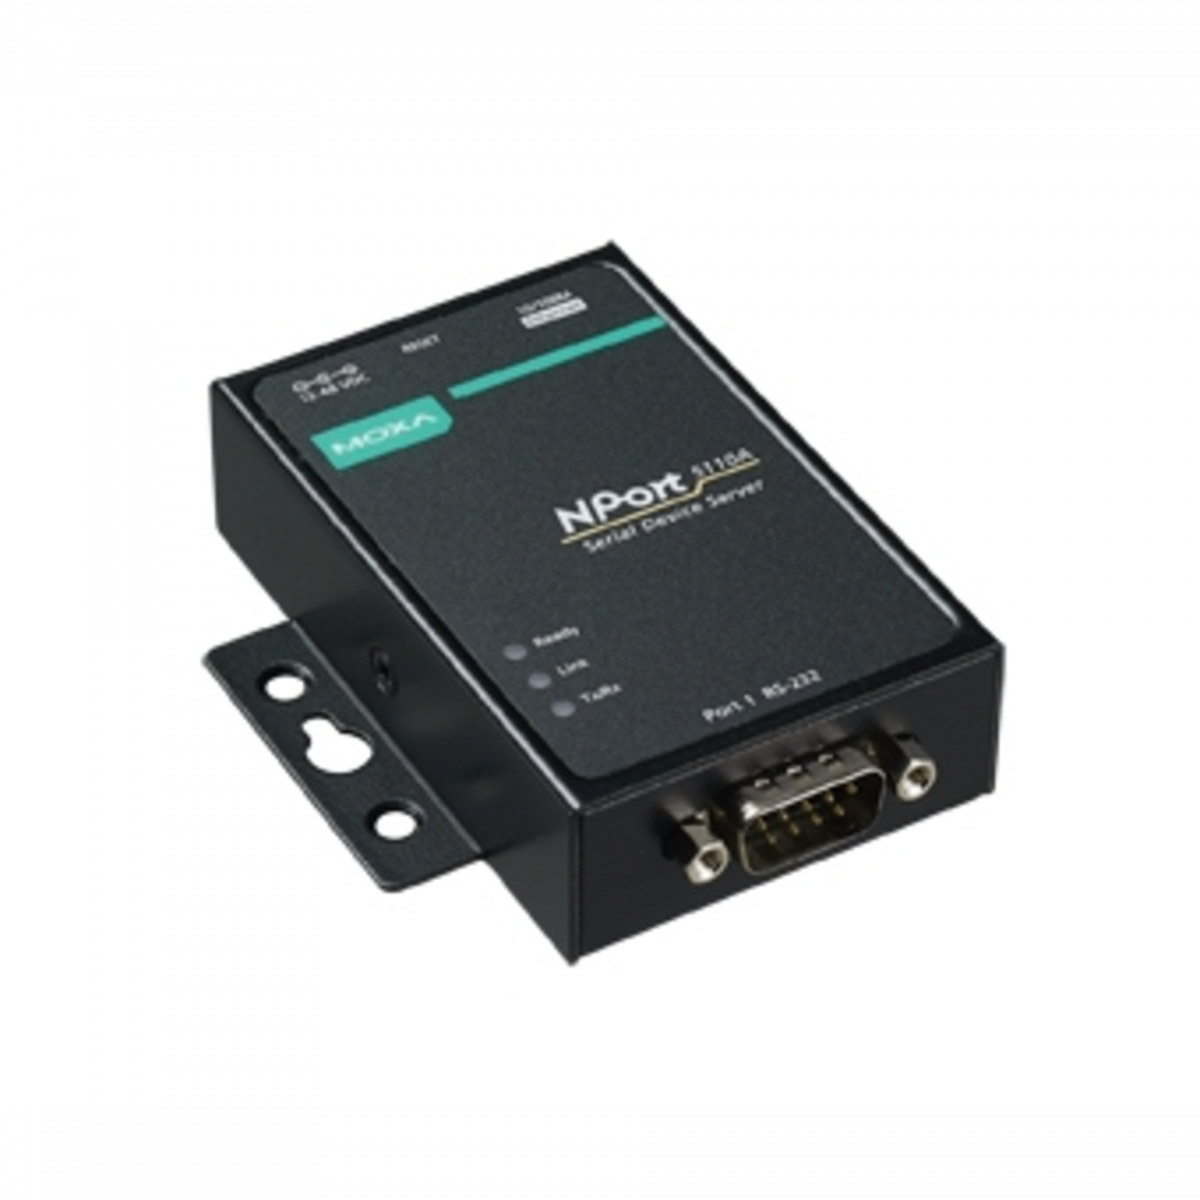 NPort 5110A-T 1-портовый усовершенствованный асинхронный сервер RS-232 в Ethernet с расширенным диапазоном температур MOXA